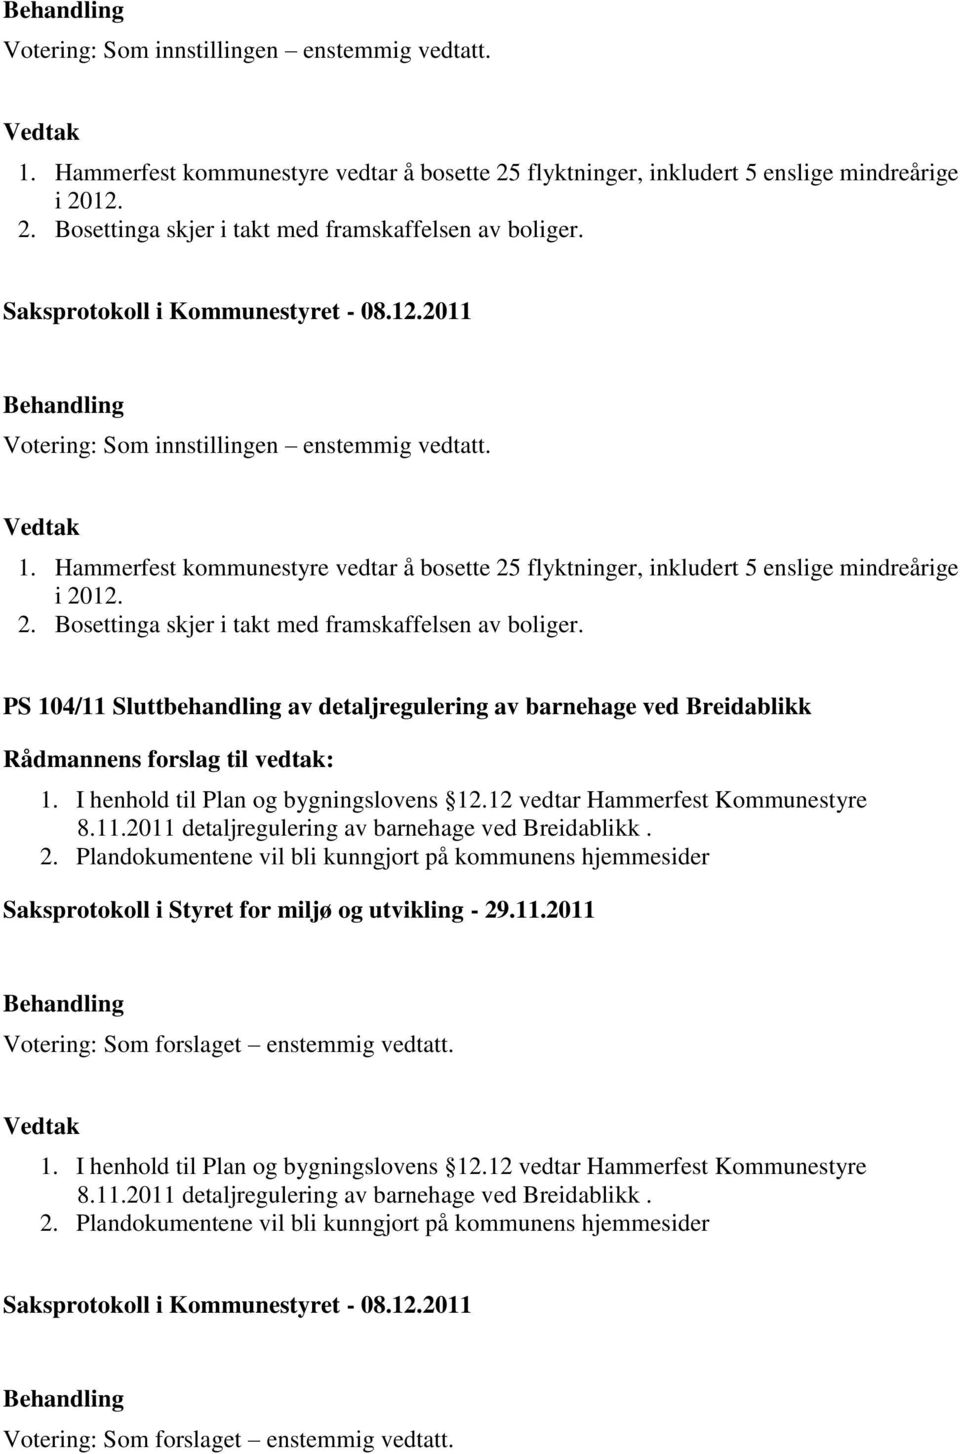 PS 104/11 Sluttbehandling av detaljregulering av barnehage ved Breidablikk 1. I henhold til Plan og bygningslovens 12.12 vedtar Hammerfest Kommunestyre 8.11.2011 detaljregulering av barnehage ved Breidablikk.